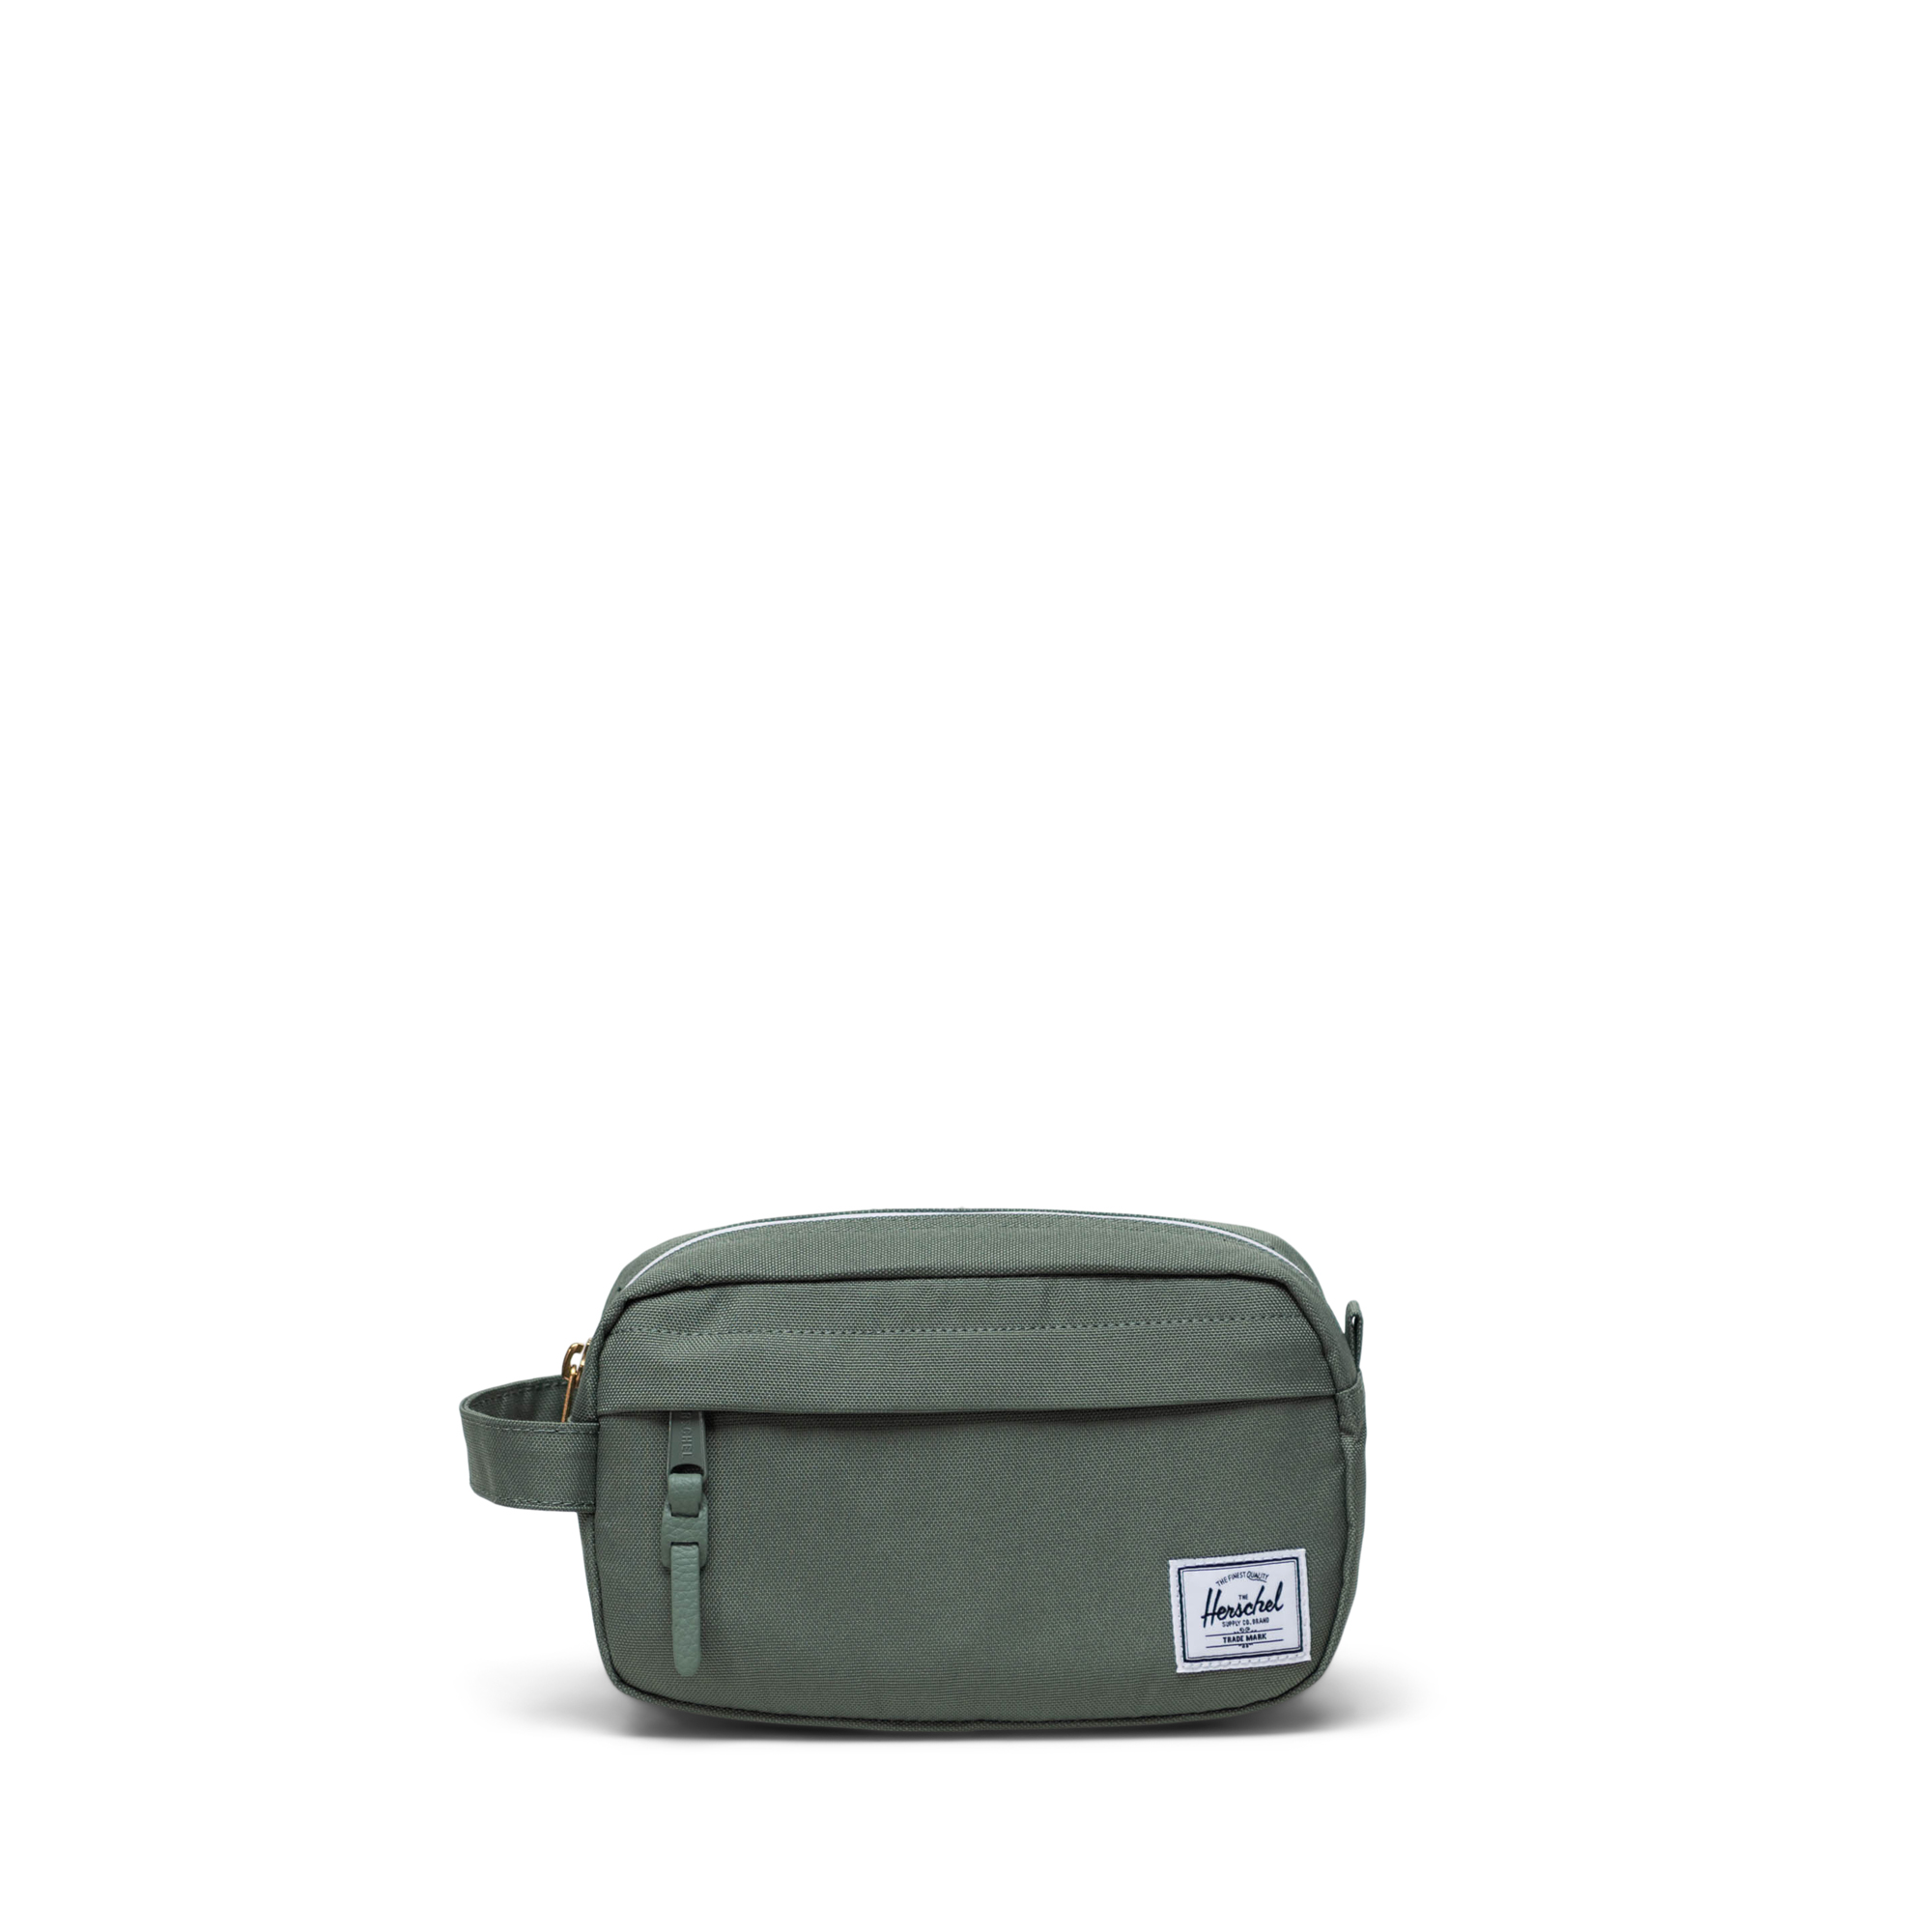 Travel case and storage pouch set, Herschel, Men's Useful Extras